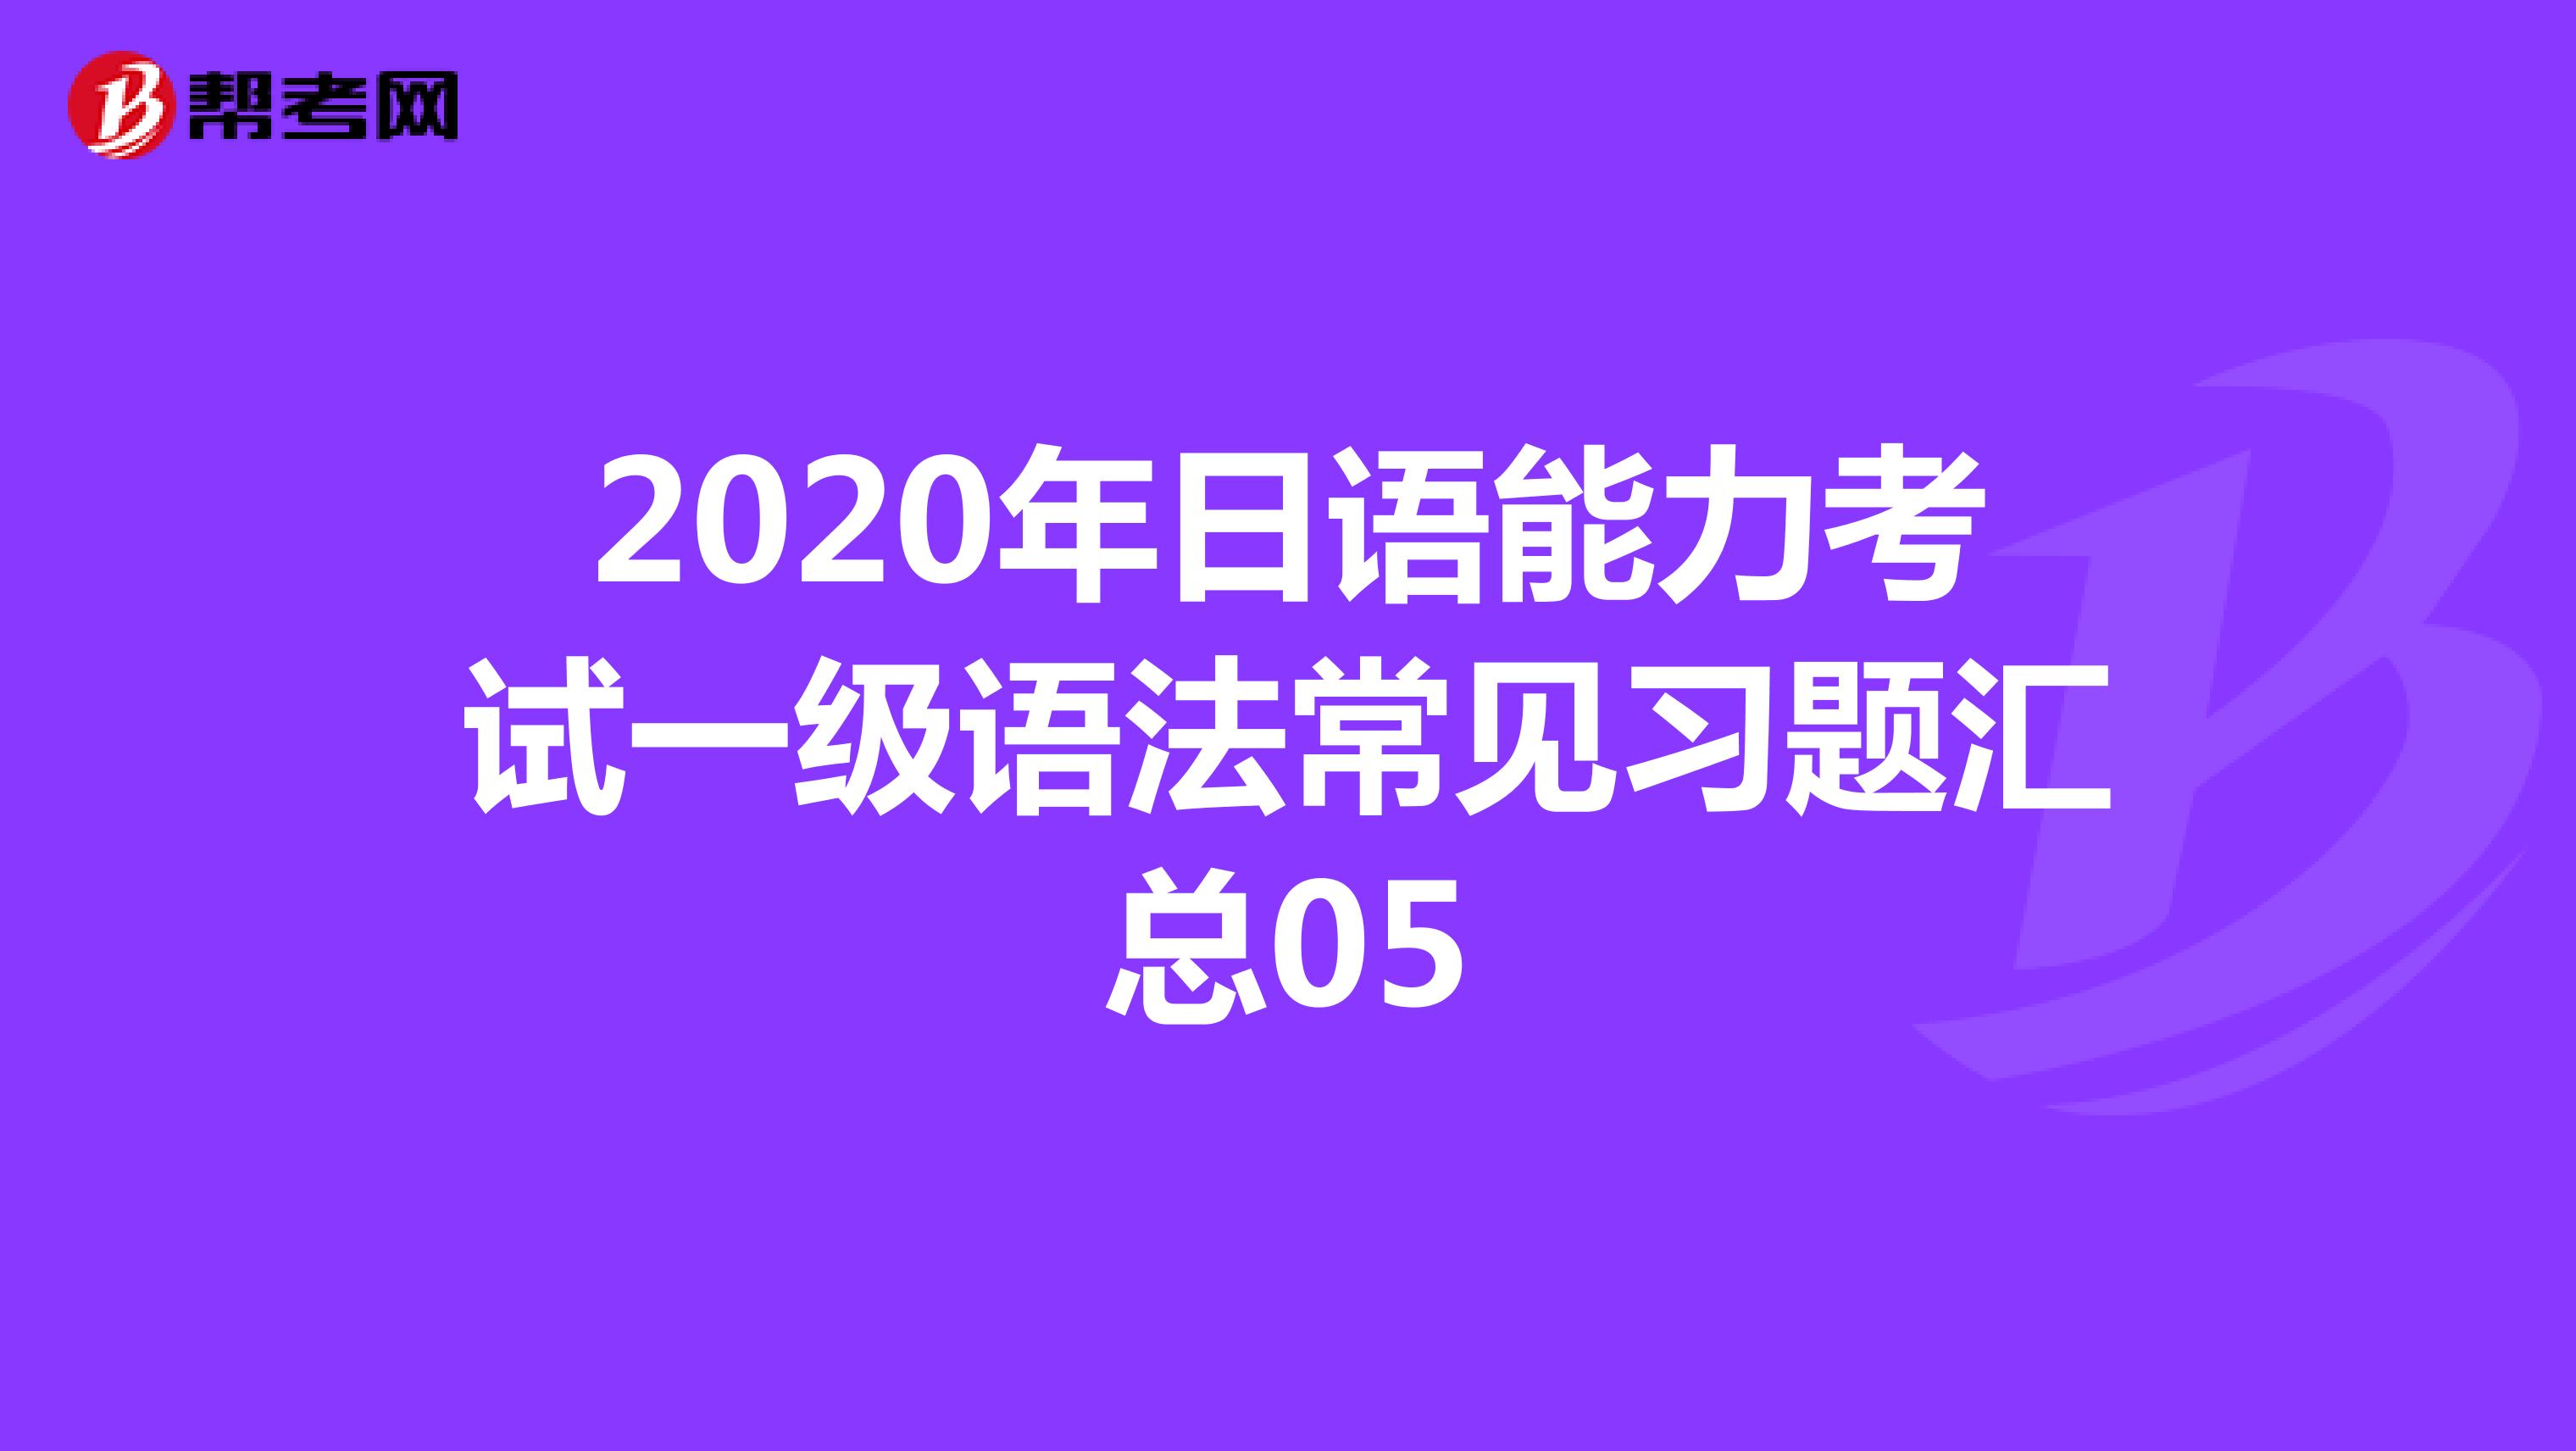 2020年日语能力考试一级语法常见习题汇总05